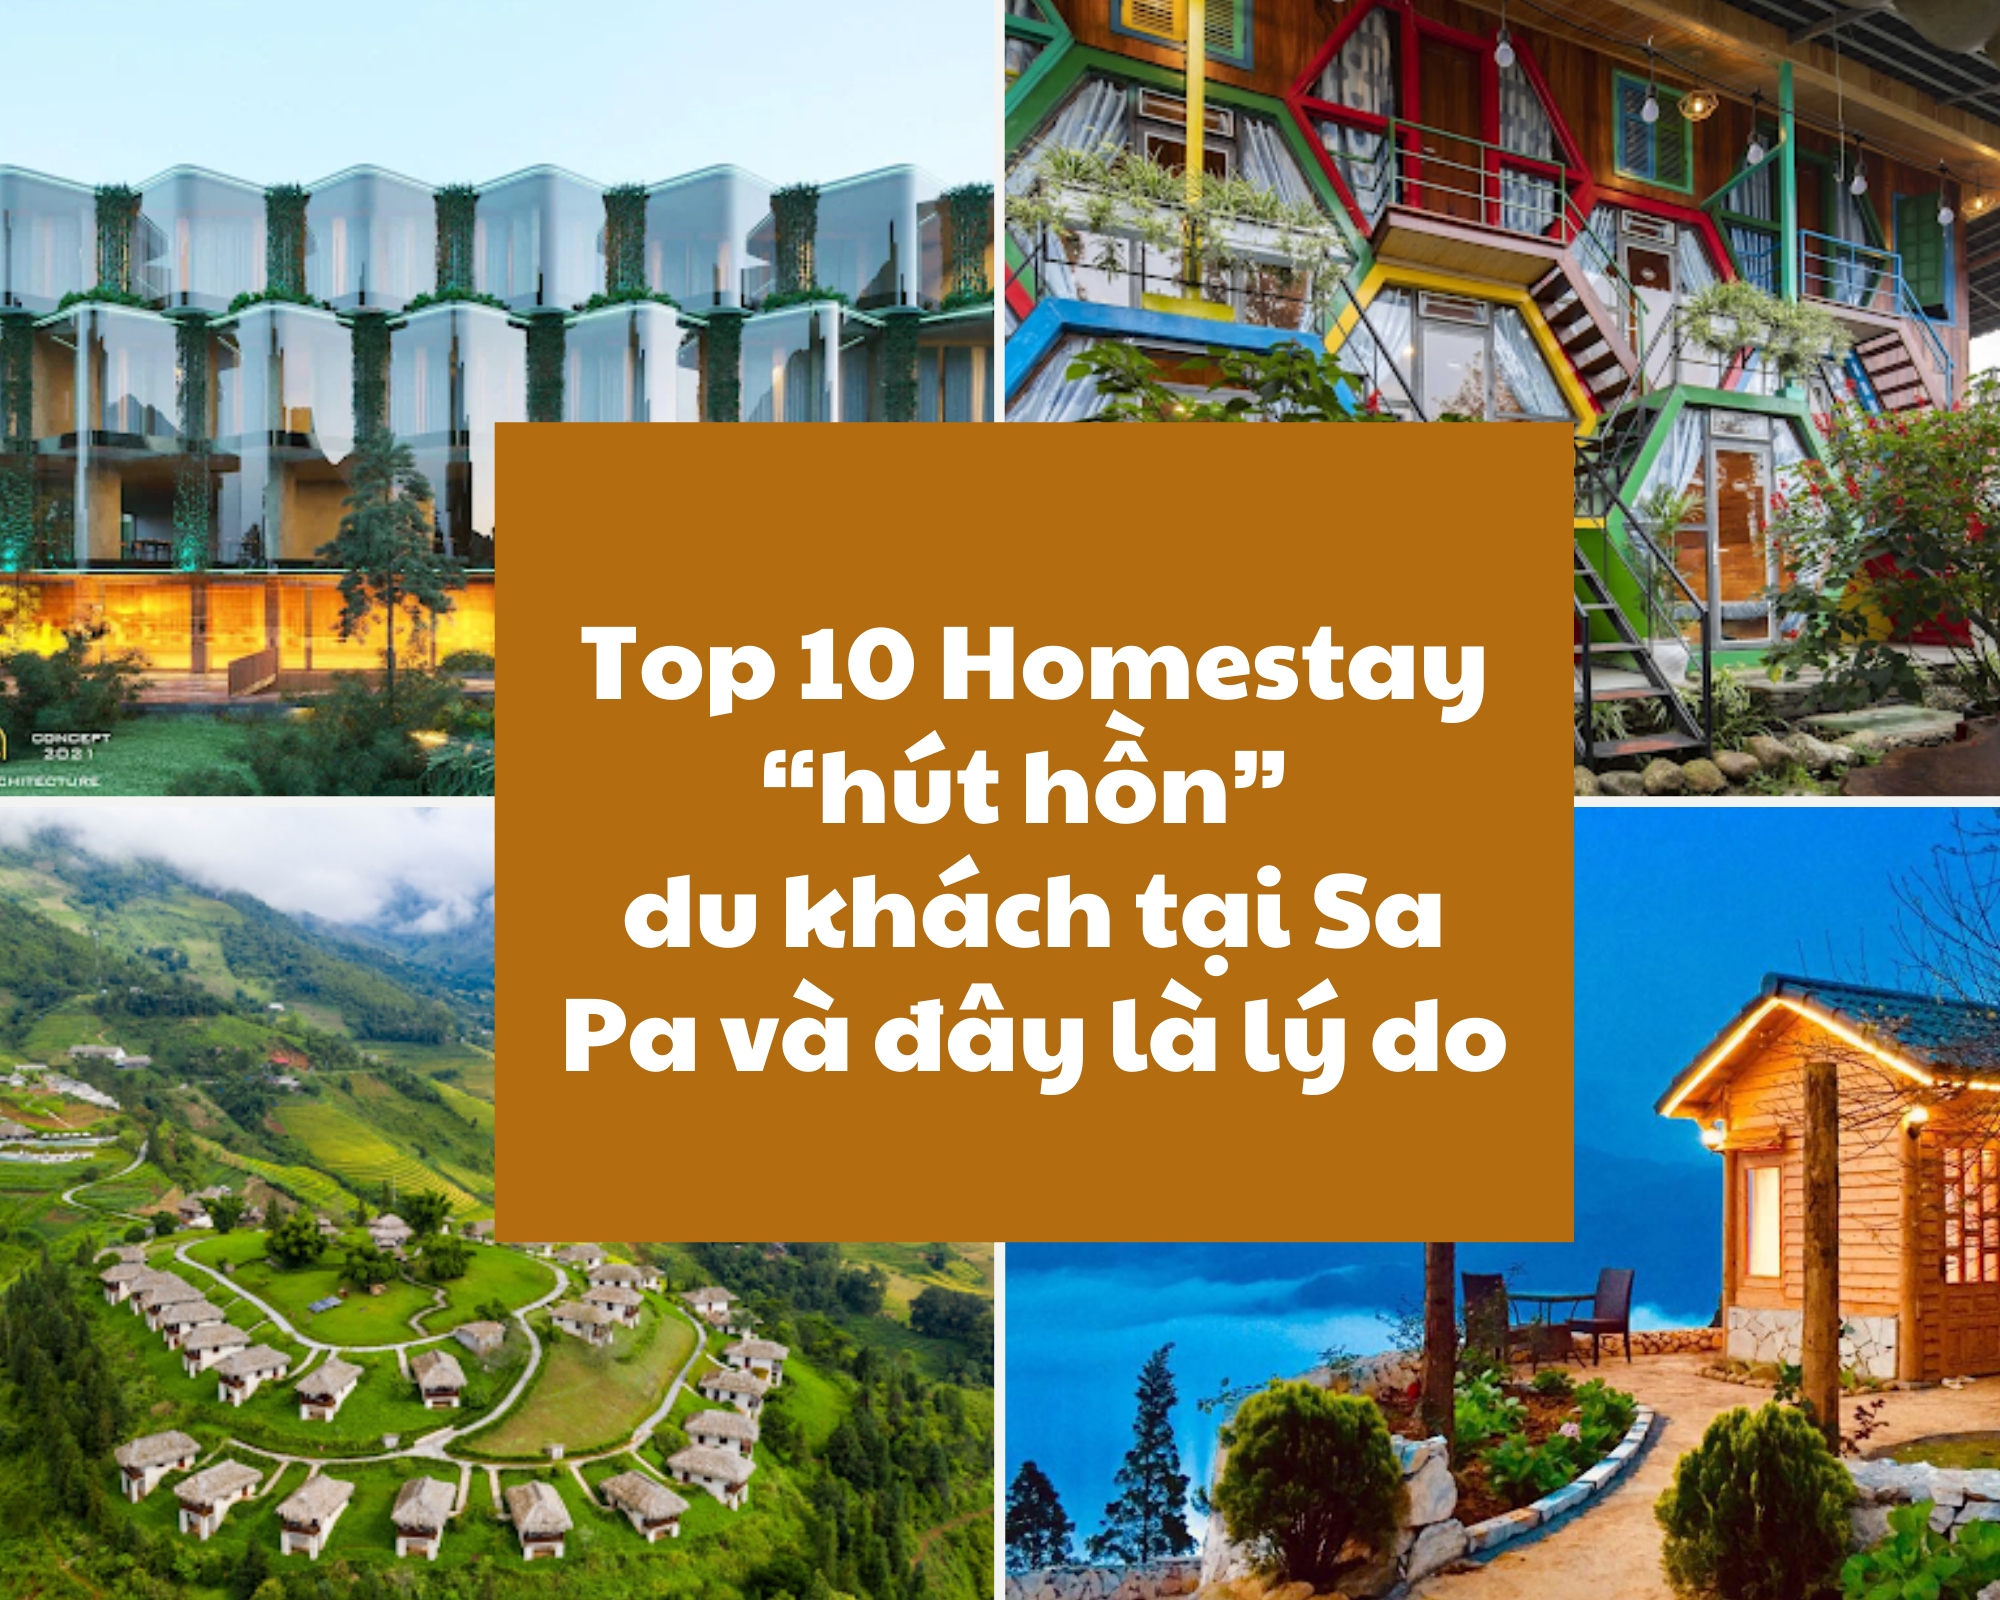 Top 10 Homestay “Hút Hồn” Du Khách Tại Sa Pa Và Đây Là Lý Do (Phần